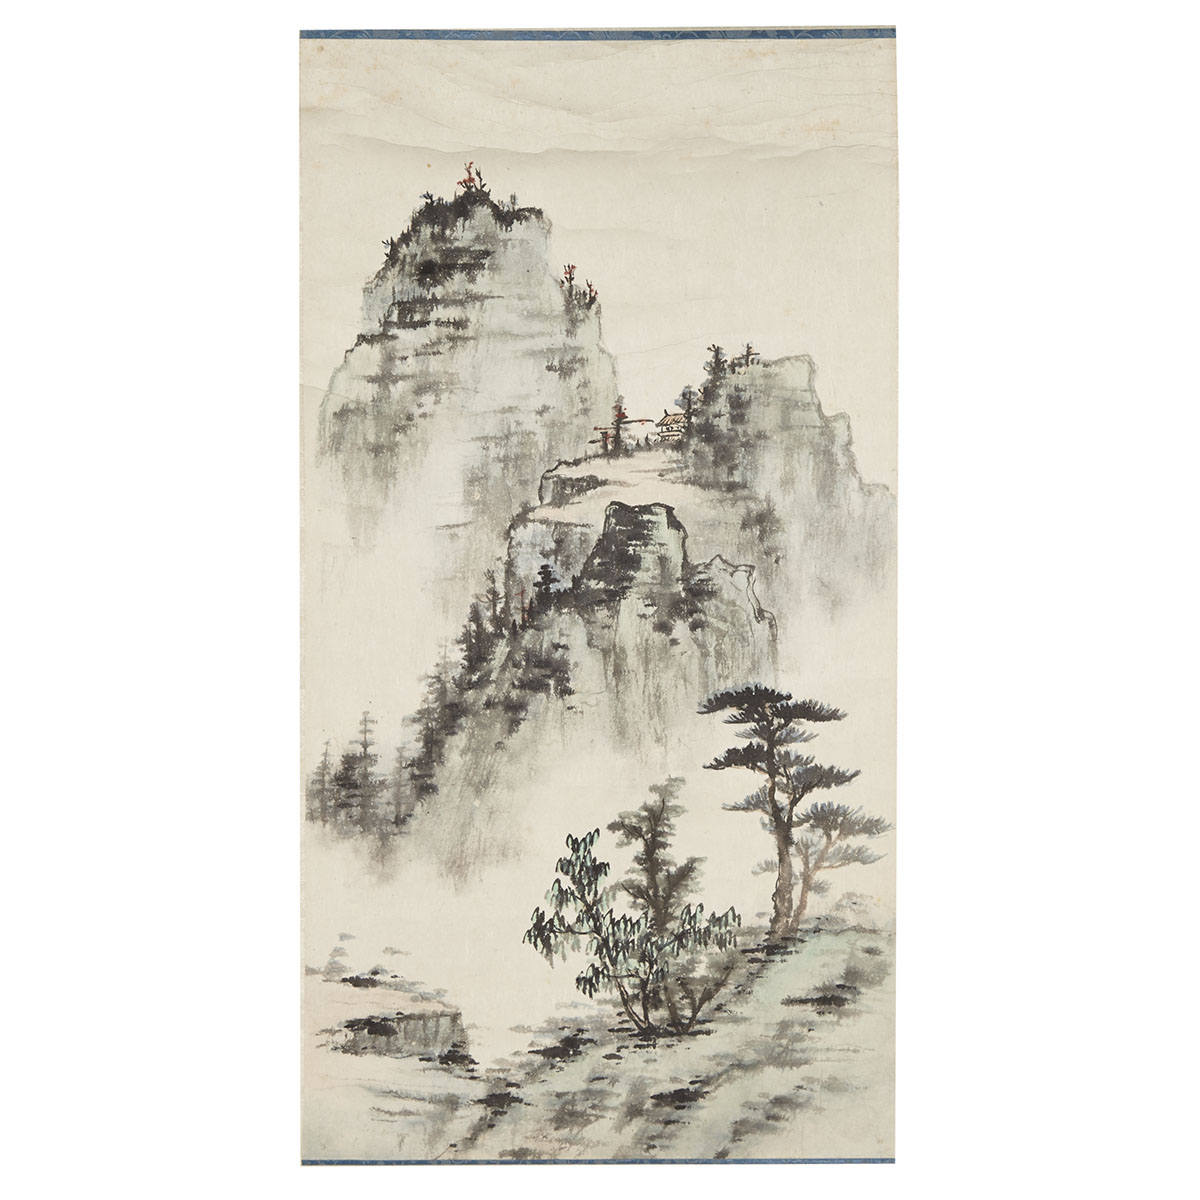 Attributed to Huang Junbi (1898-1991)